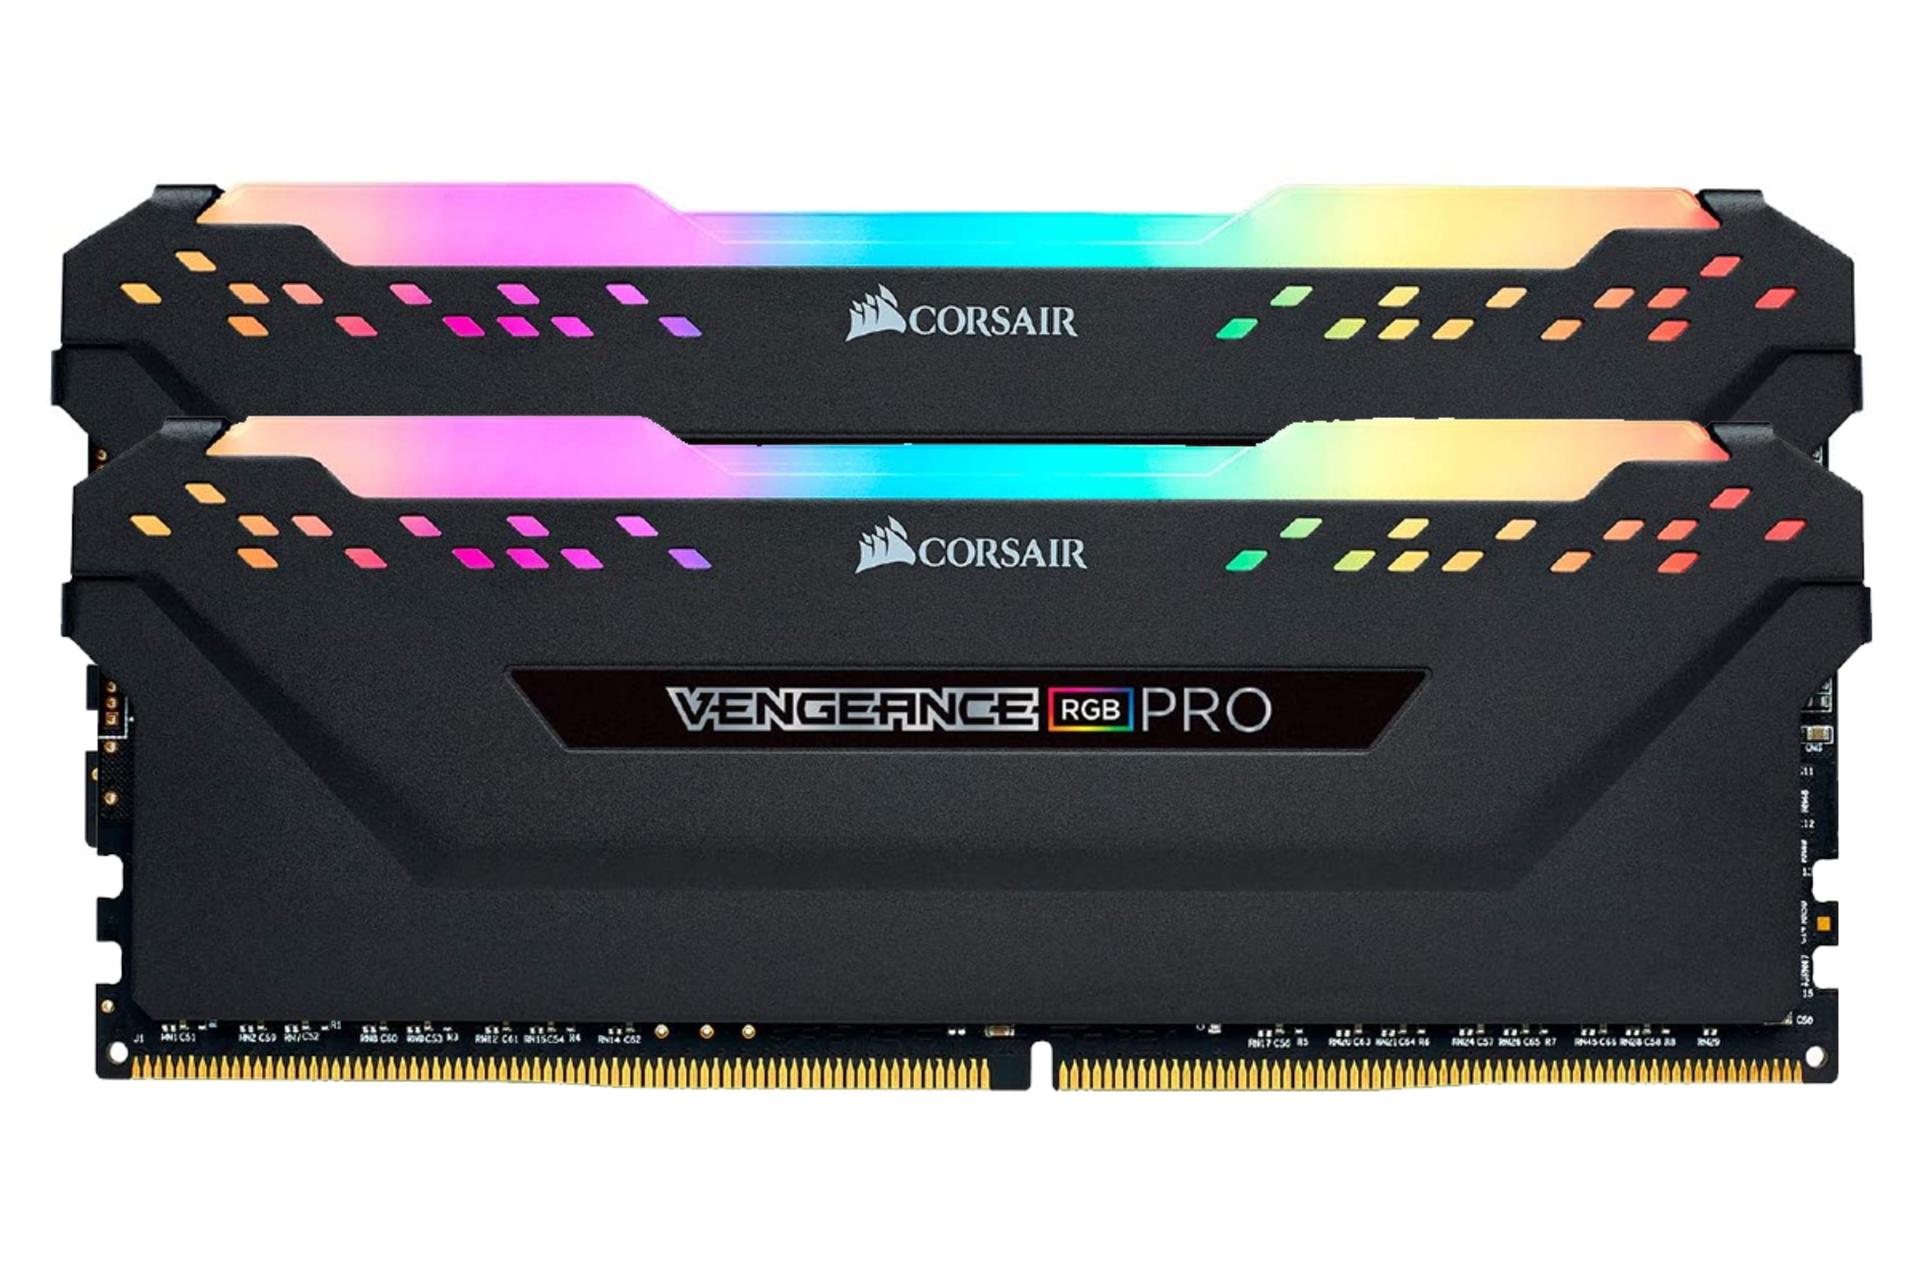 مرجع متخصصين ايران نماي جلو حافظه رم كورسير VENGEANCE RGB PRO ظرفيت 16 گيگابايت (2x8) از نوع DDR4-3000